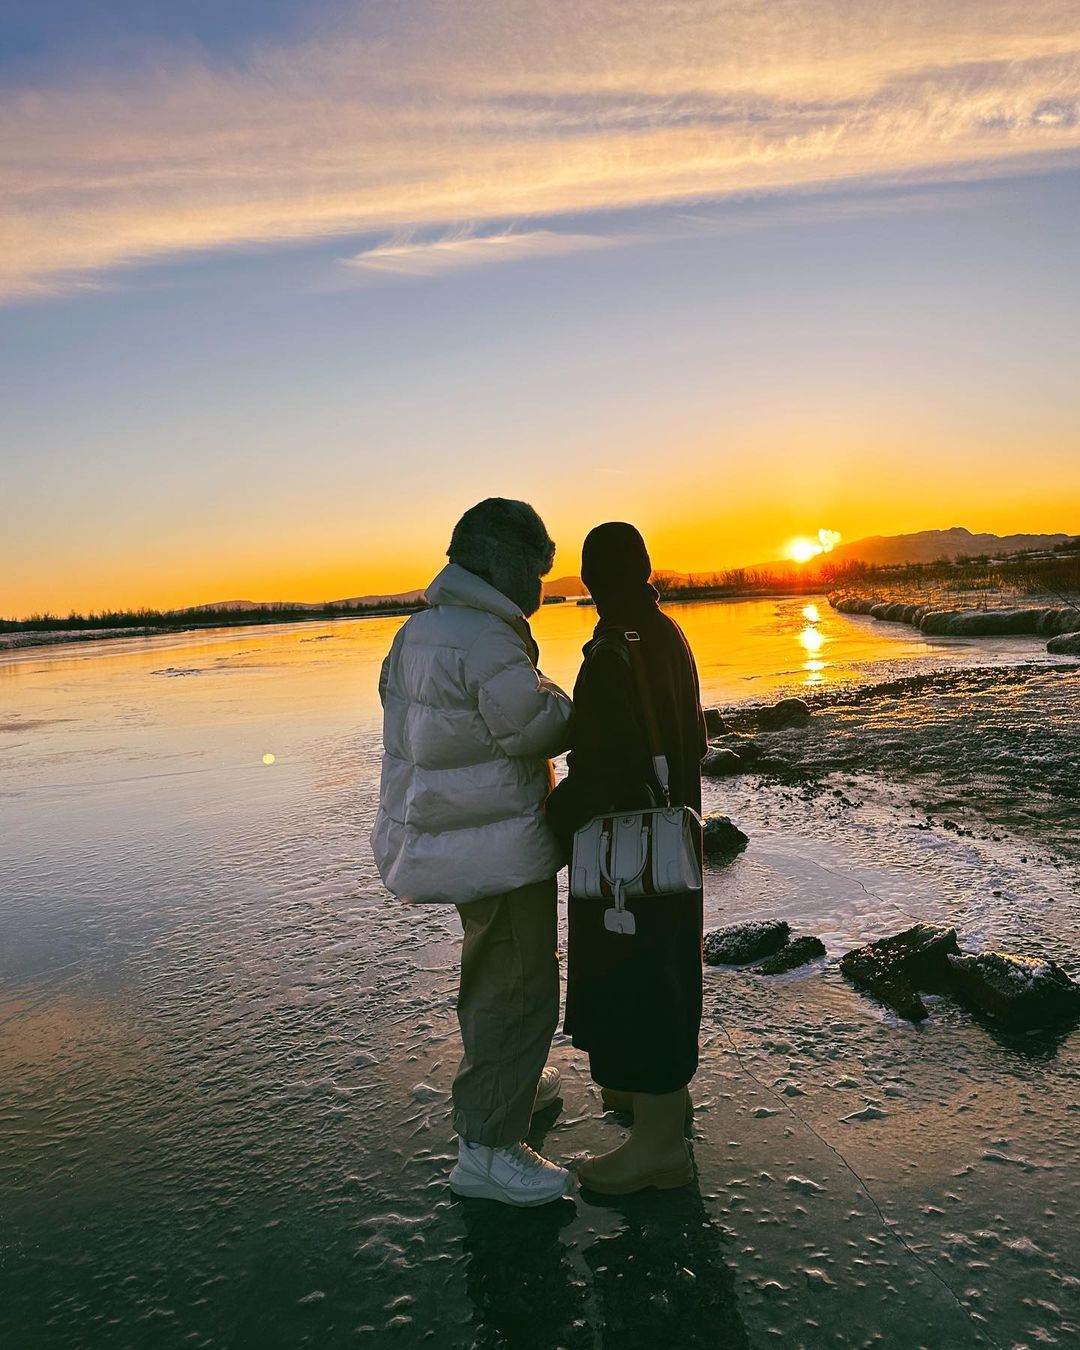 Hình ảnh về chuyến đi hò hẹn tình cảm của Châu Bùi và Binz, được thực hiện tại Iceland - ngày hôm qua với tình cảm ấm áp và tràn đầy niềm yêu thương sẽ khiến bạn muốn cùng khám phá đất nước thần tiên này. Hãy đón xem những bức ảnh đầy cảm xúc này để cảm nhận tình cảm nồng nàn ấy.